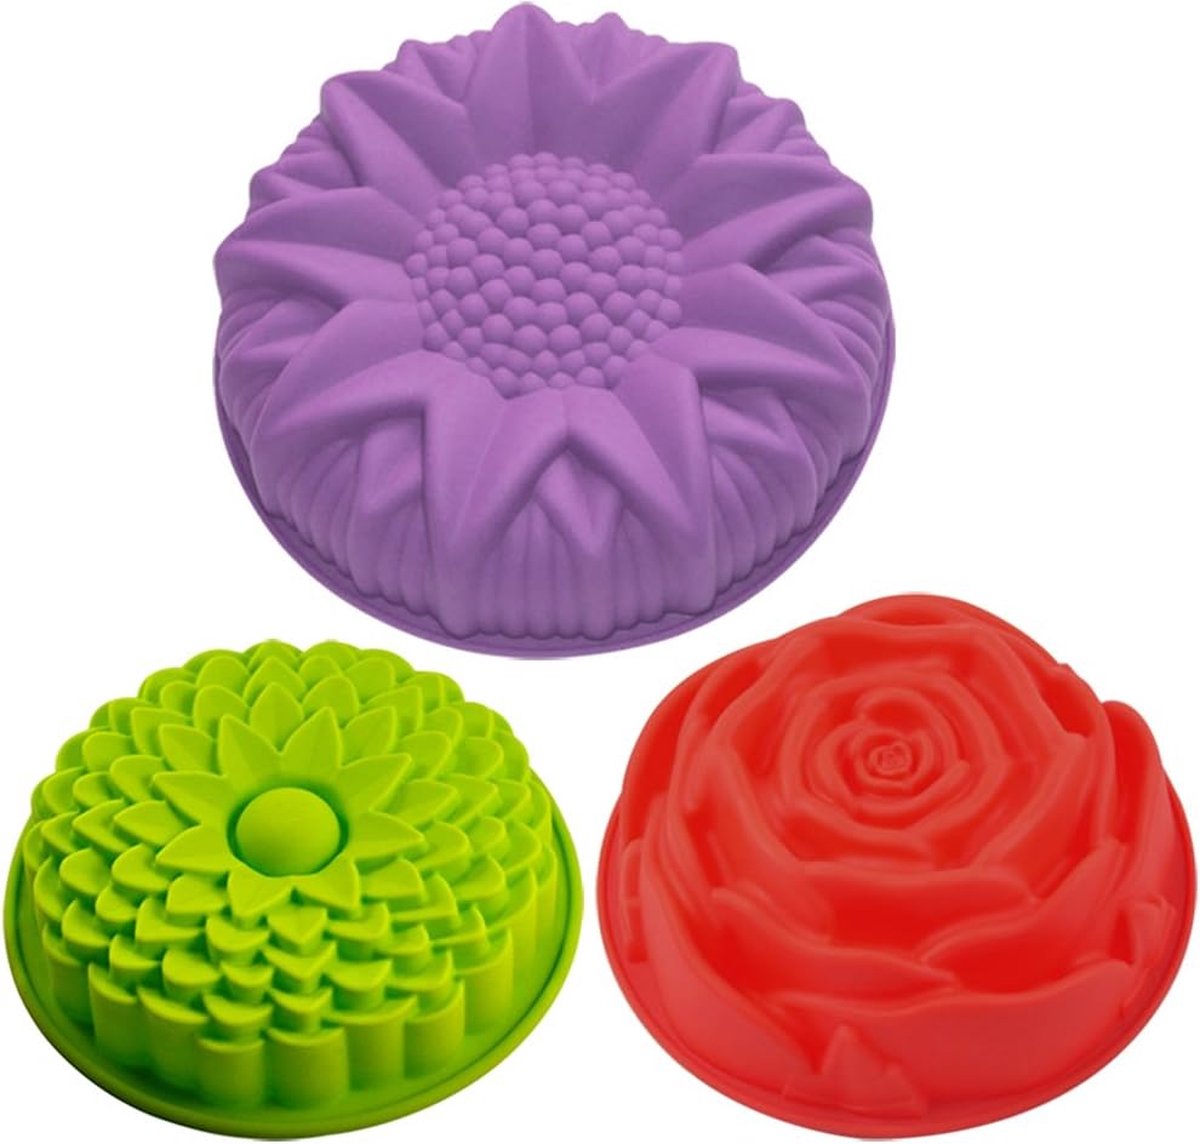 3 siliconen vormen met bloemenpatroon, taartvorm, broodvorm, grote ronde zonnebloem, chrysant, roze - geel, rood, violet